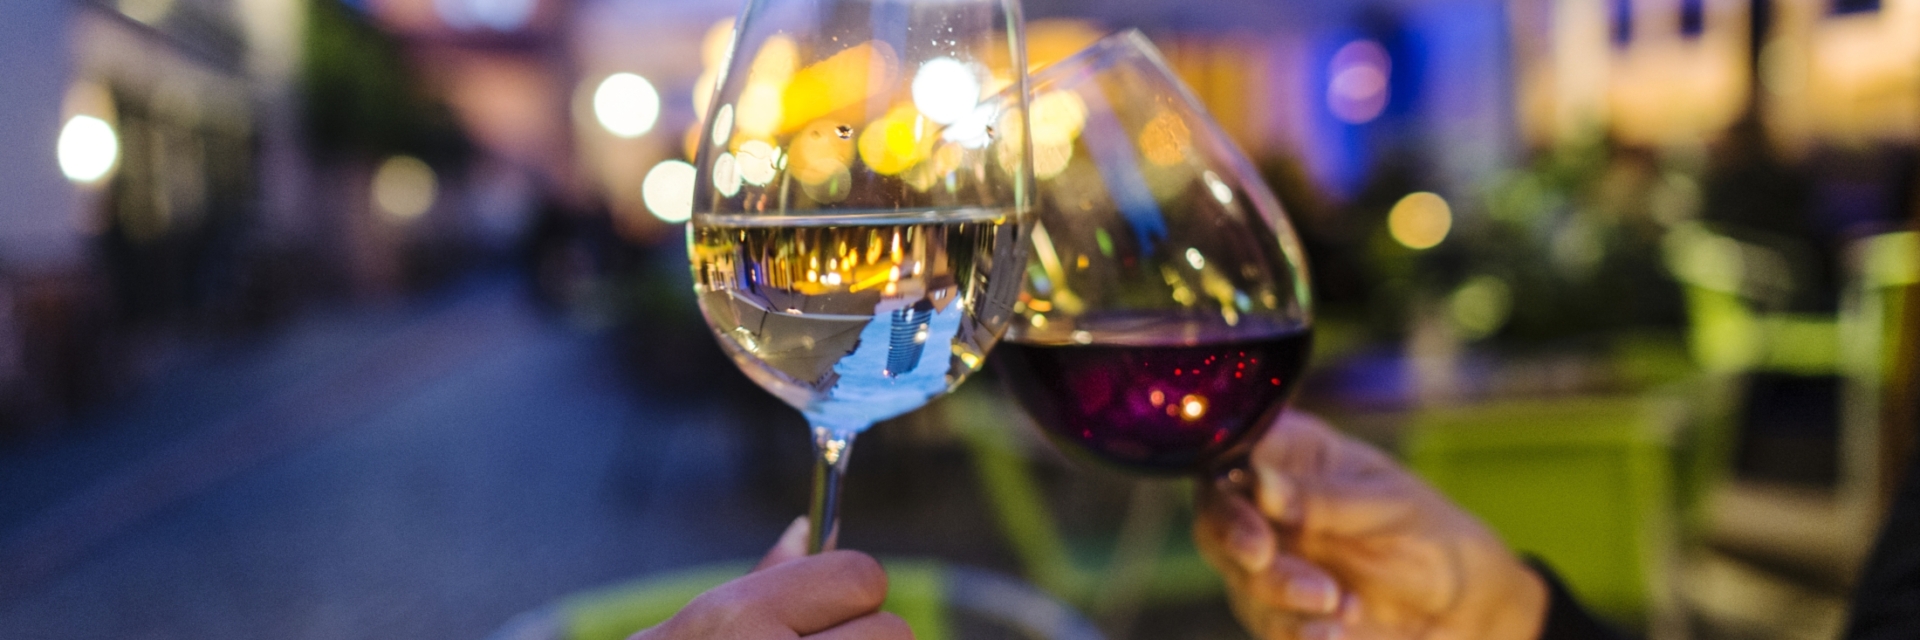 Zwei Weingläser mit Wagnergasse im Hintergrund - Abendprogramme in Jena © JenaKultur, Foto: Andreas Hub